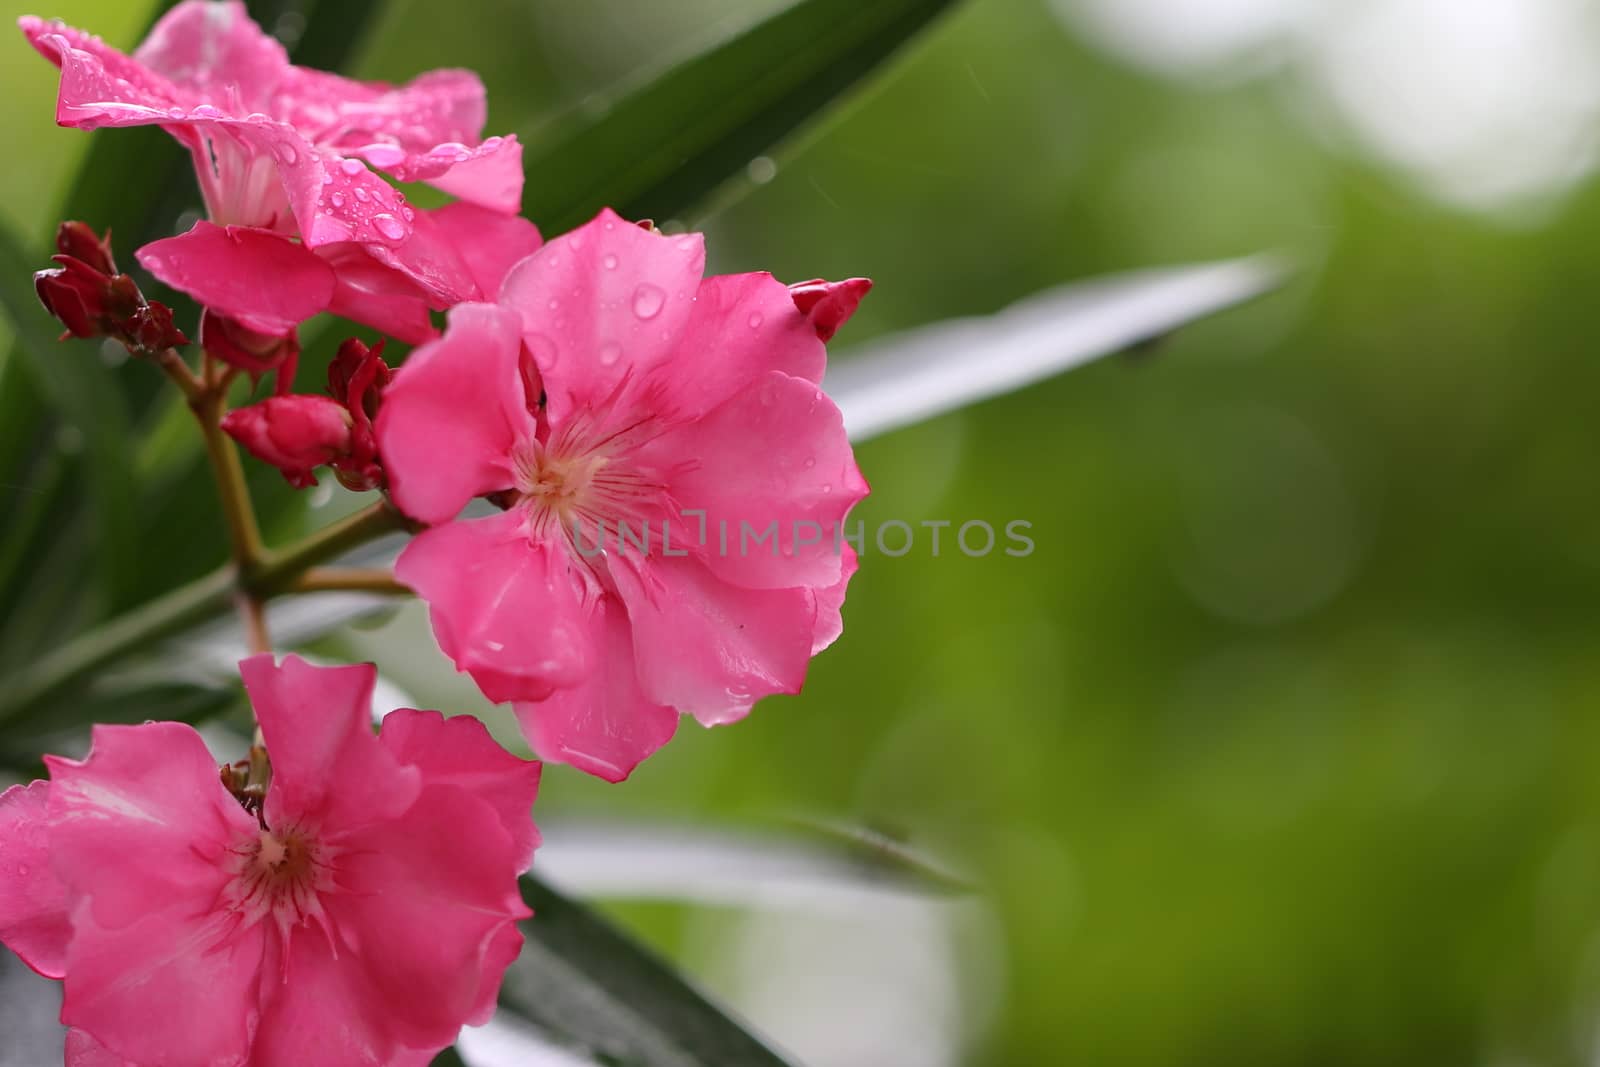 Pink oleander flower soaked in rain by 9500102400